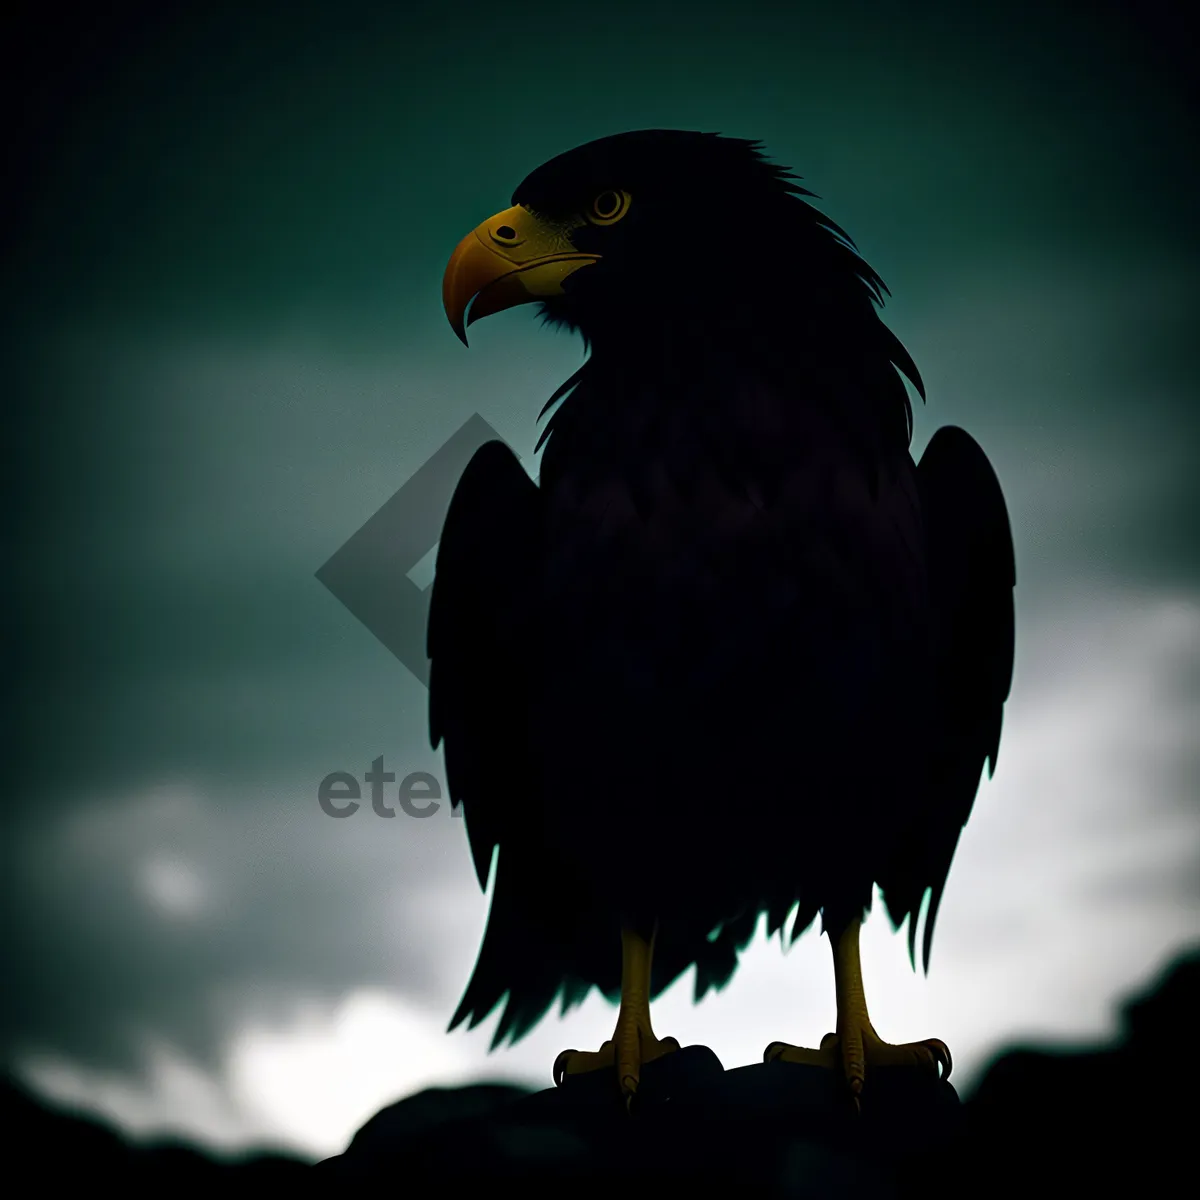 Picture of Majestic Predator: Bald Eagle in Flight.